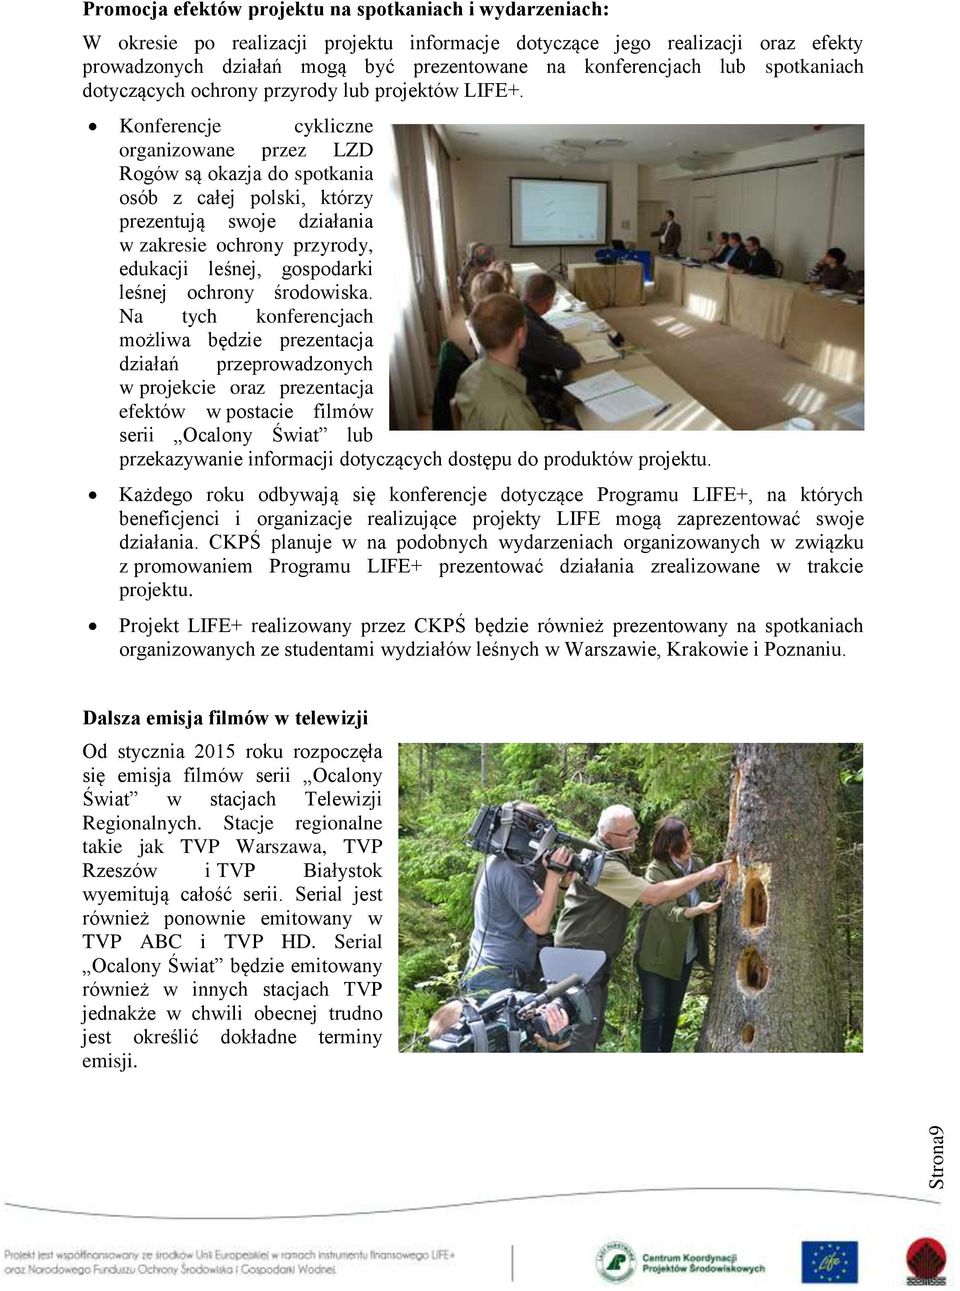 Konferencje cykliczne organizowane przez LZD Rogów są okazja do spotkania osób z całej polski, którzy prezentują swoje działania w zakresie ochrony przyrody, edukacji leśnej, gospodarki leśnej